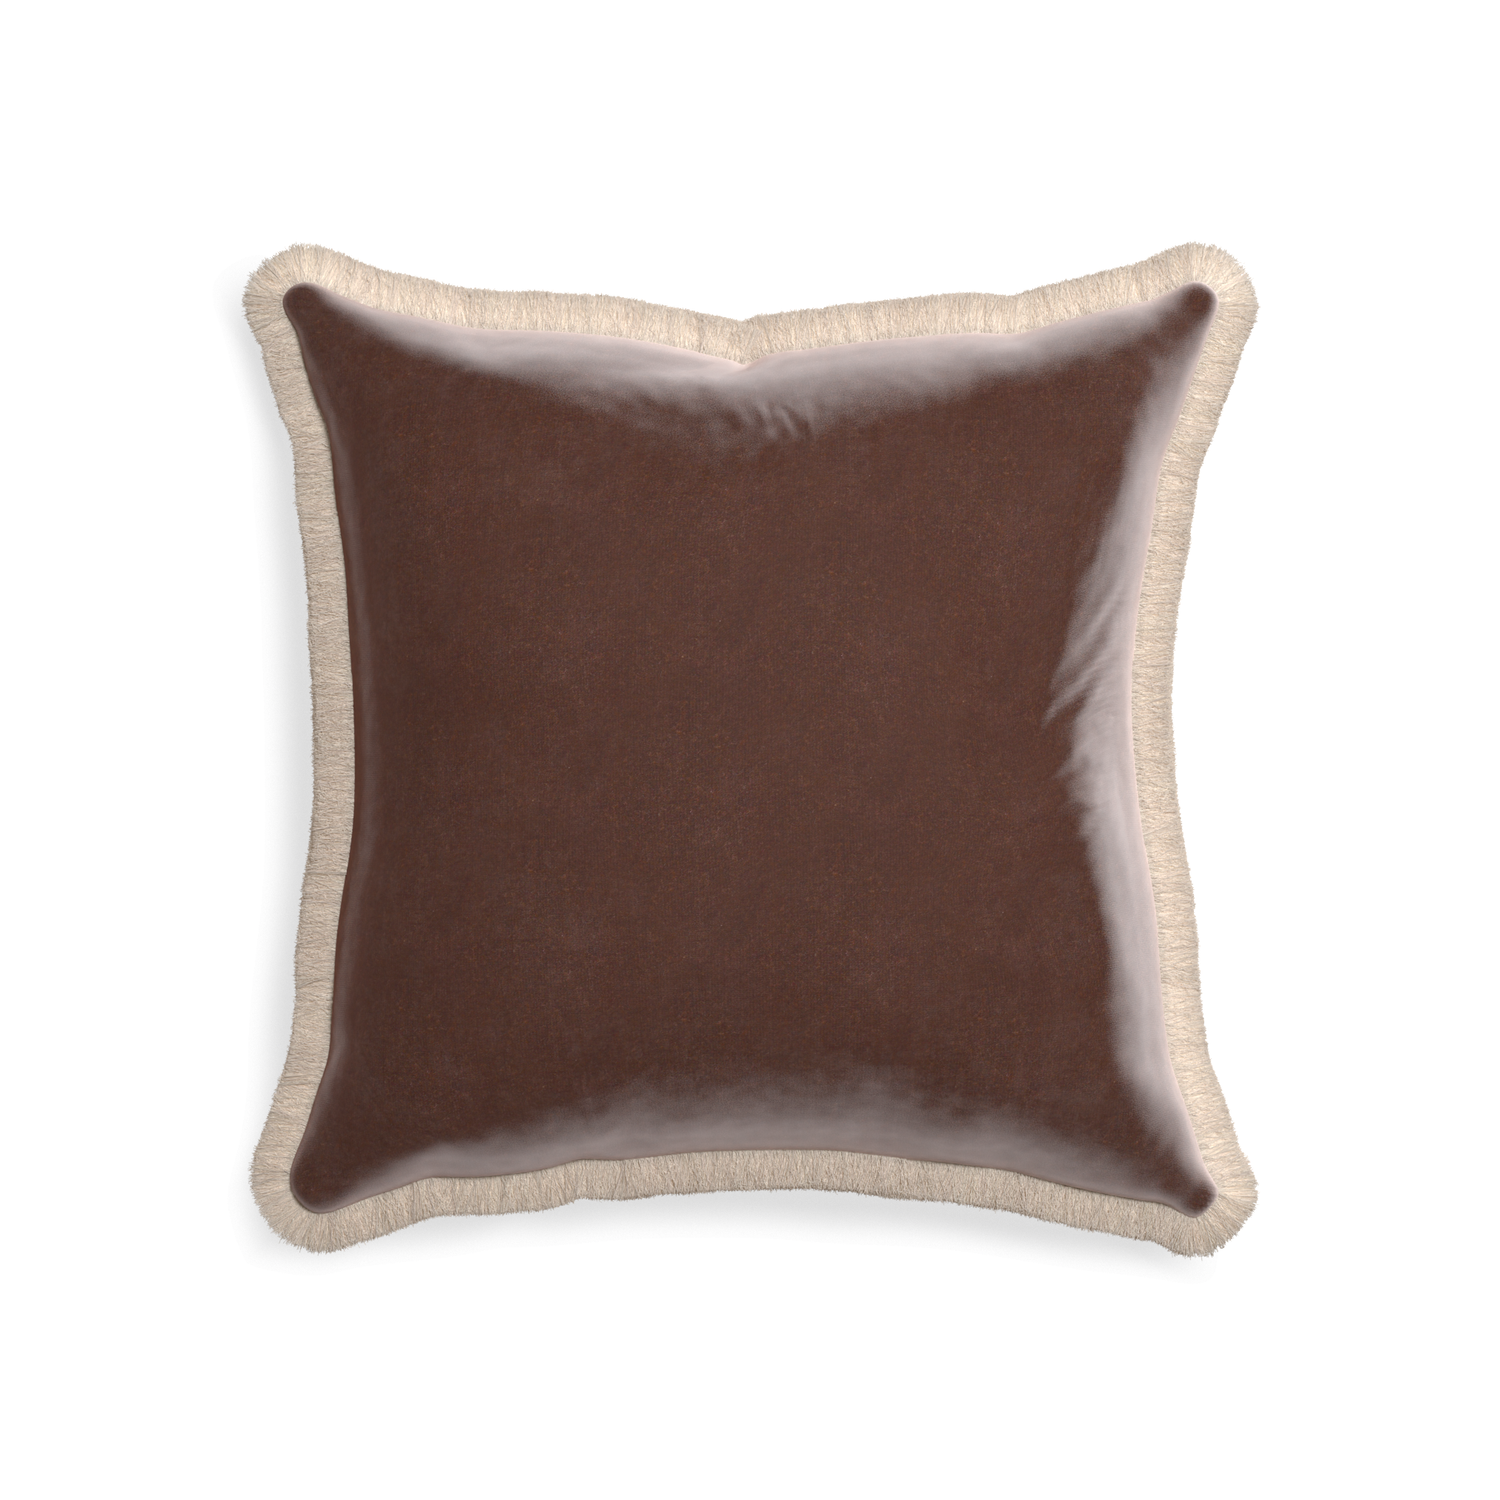 20-square walnut velvet custom pillow with cream fringe on white background